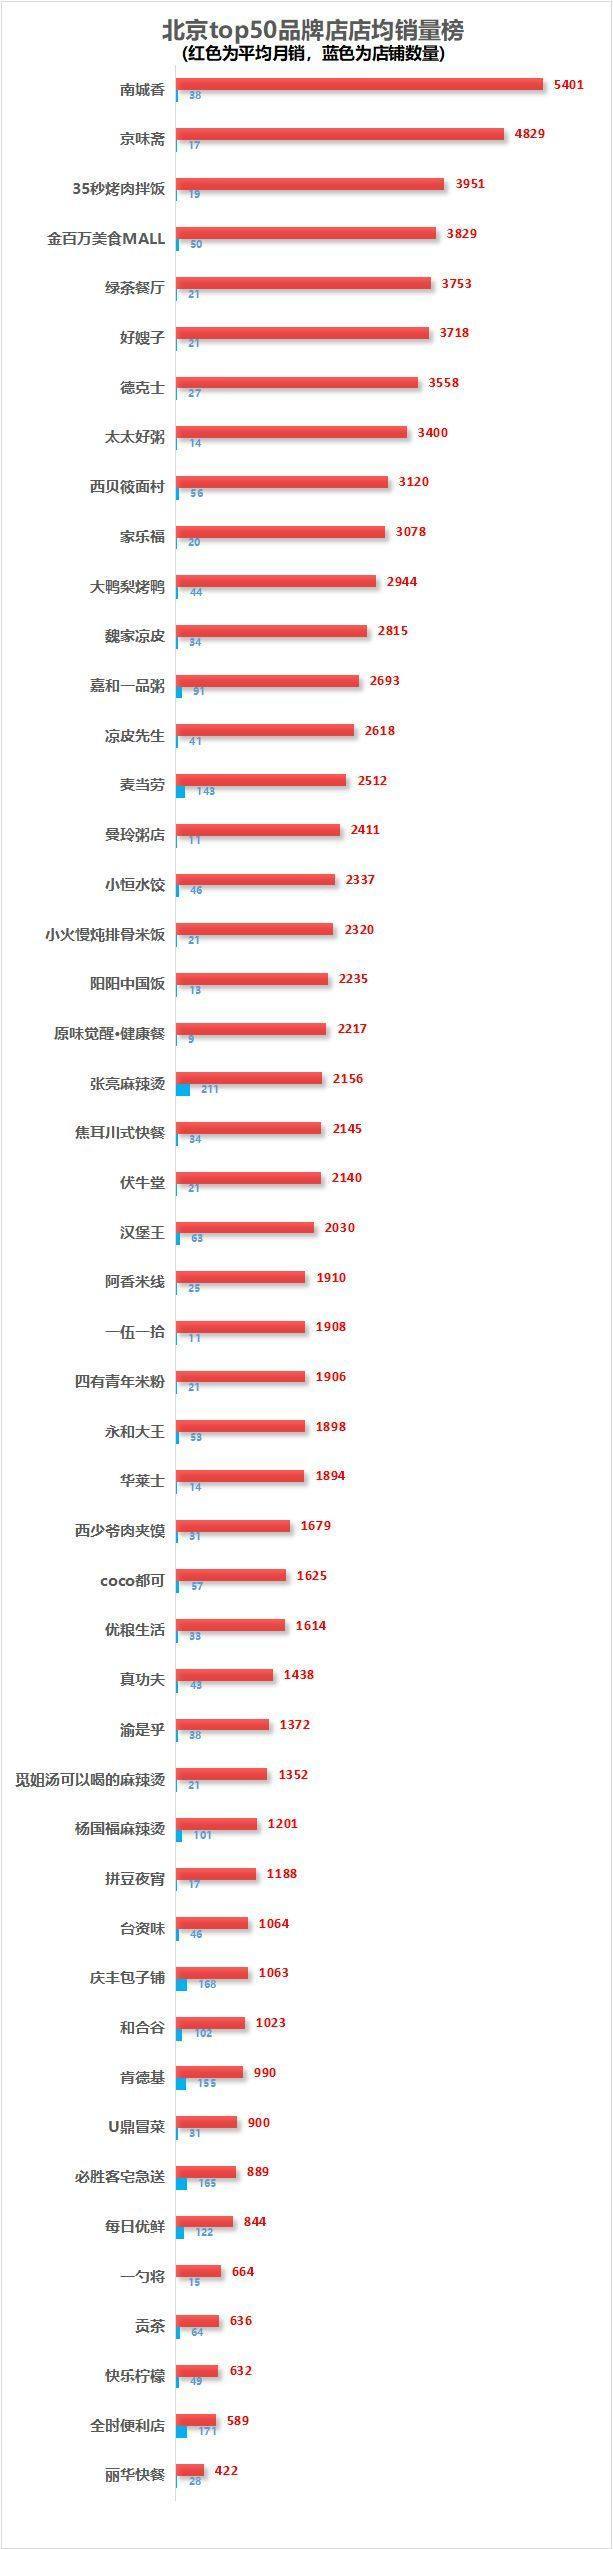 外卖大数据+品牌单量排行榜--北京5月数据